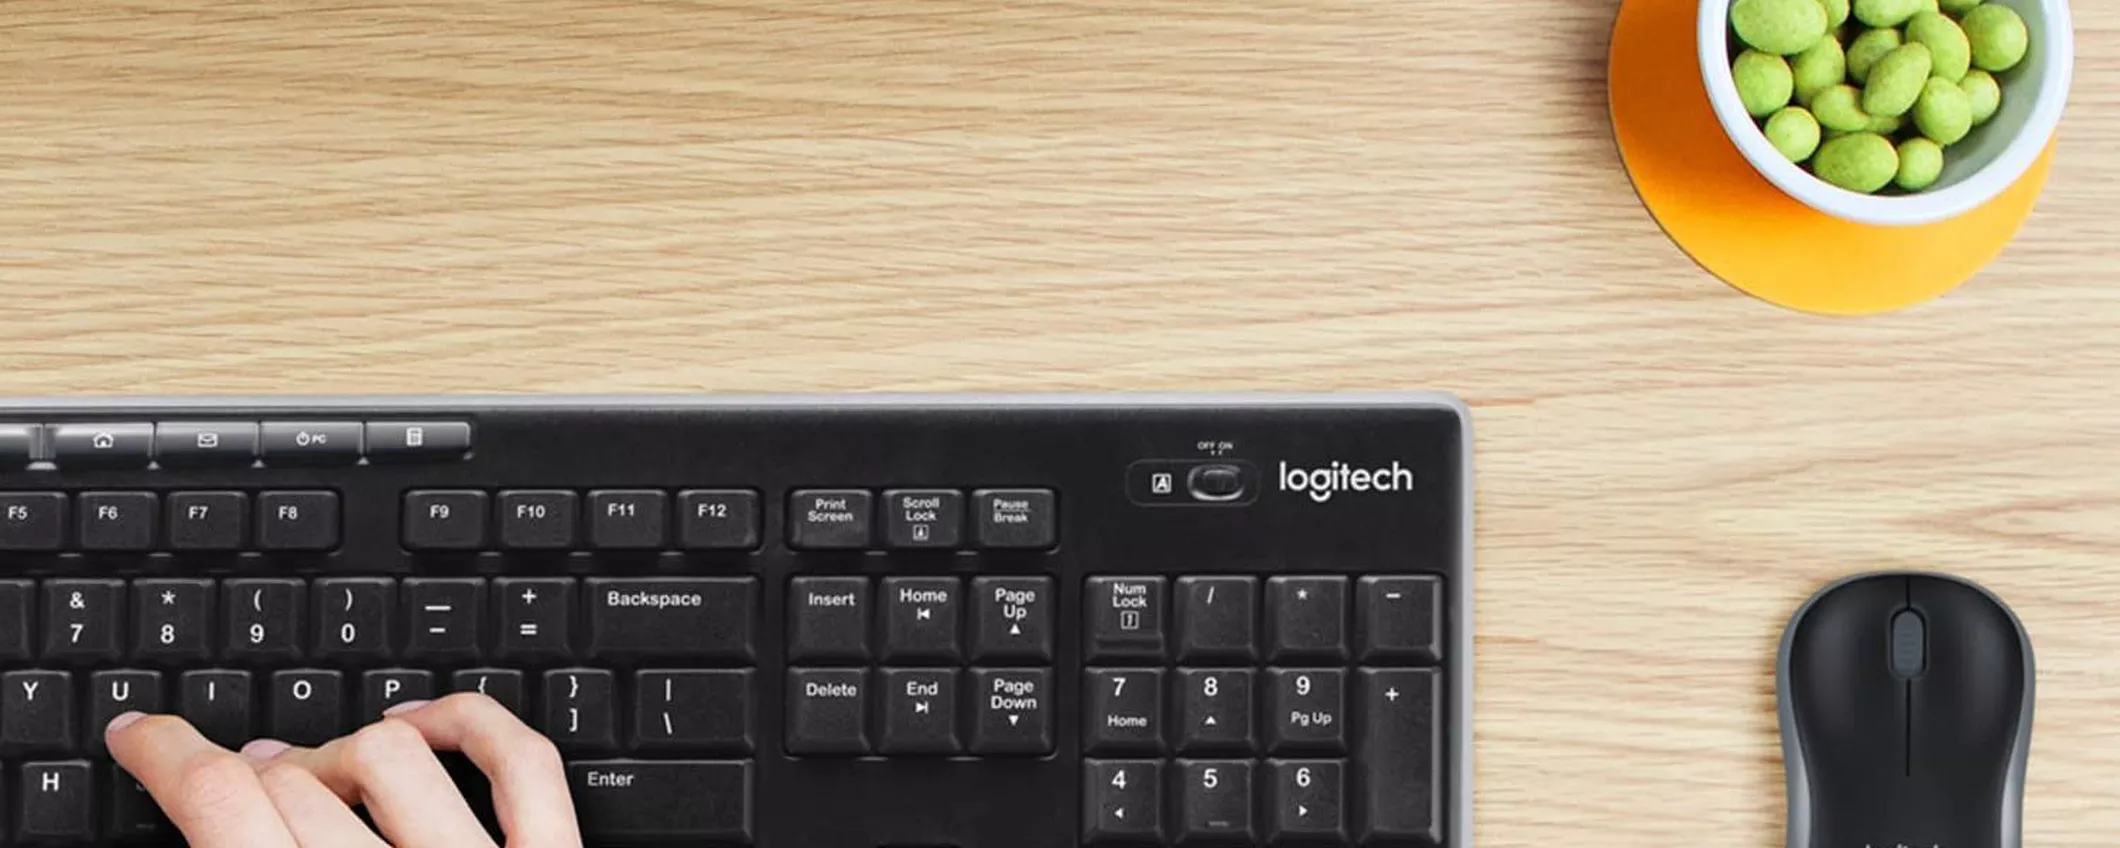 Logitech MK270, mouse e tastiera wireless in combo a soli 23€: offerta PAZZESCA Amazon